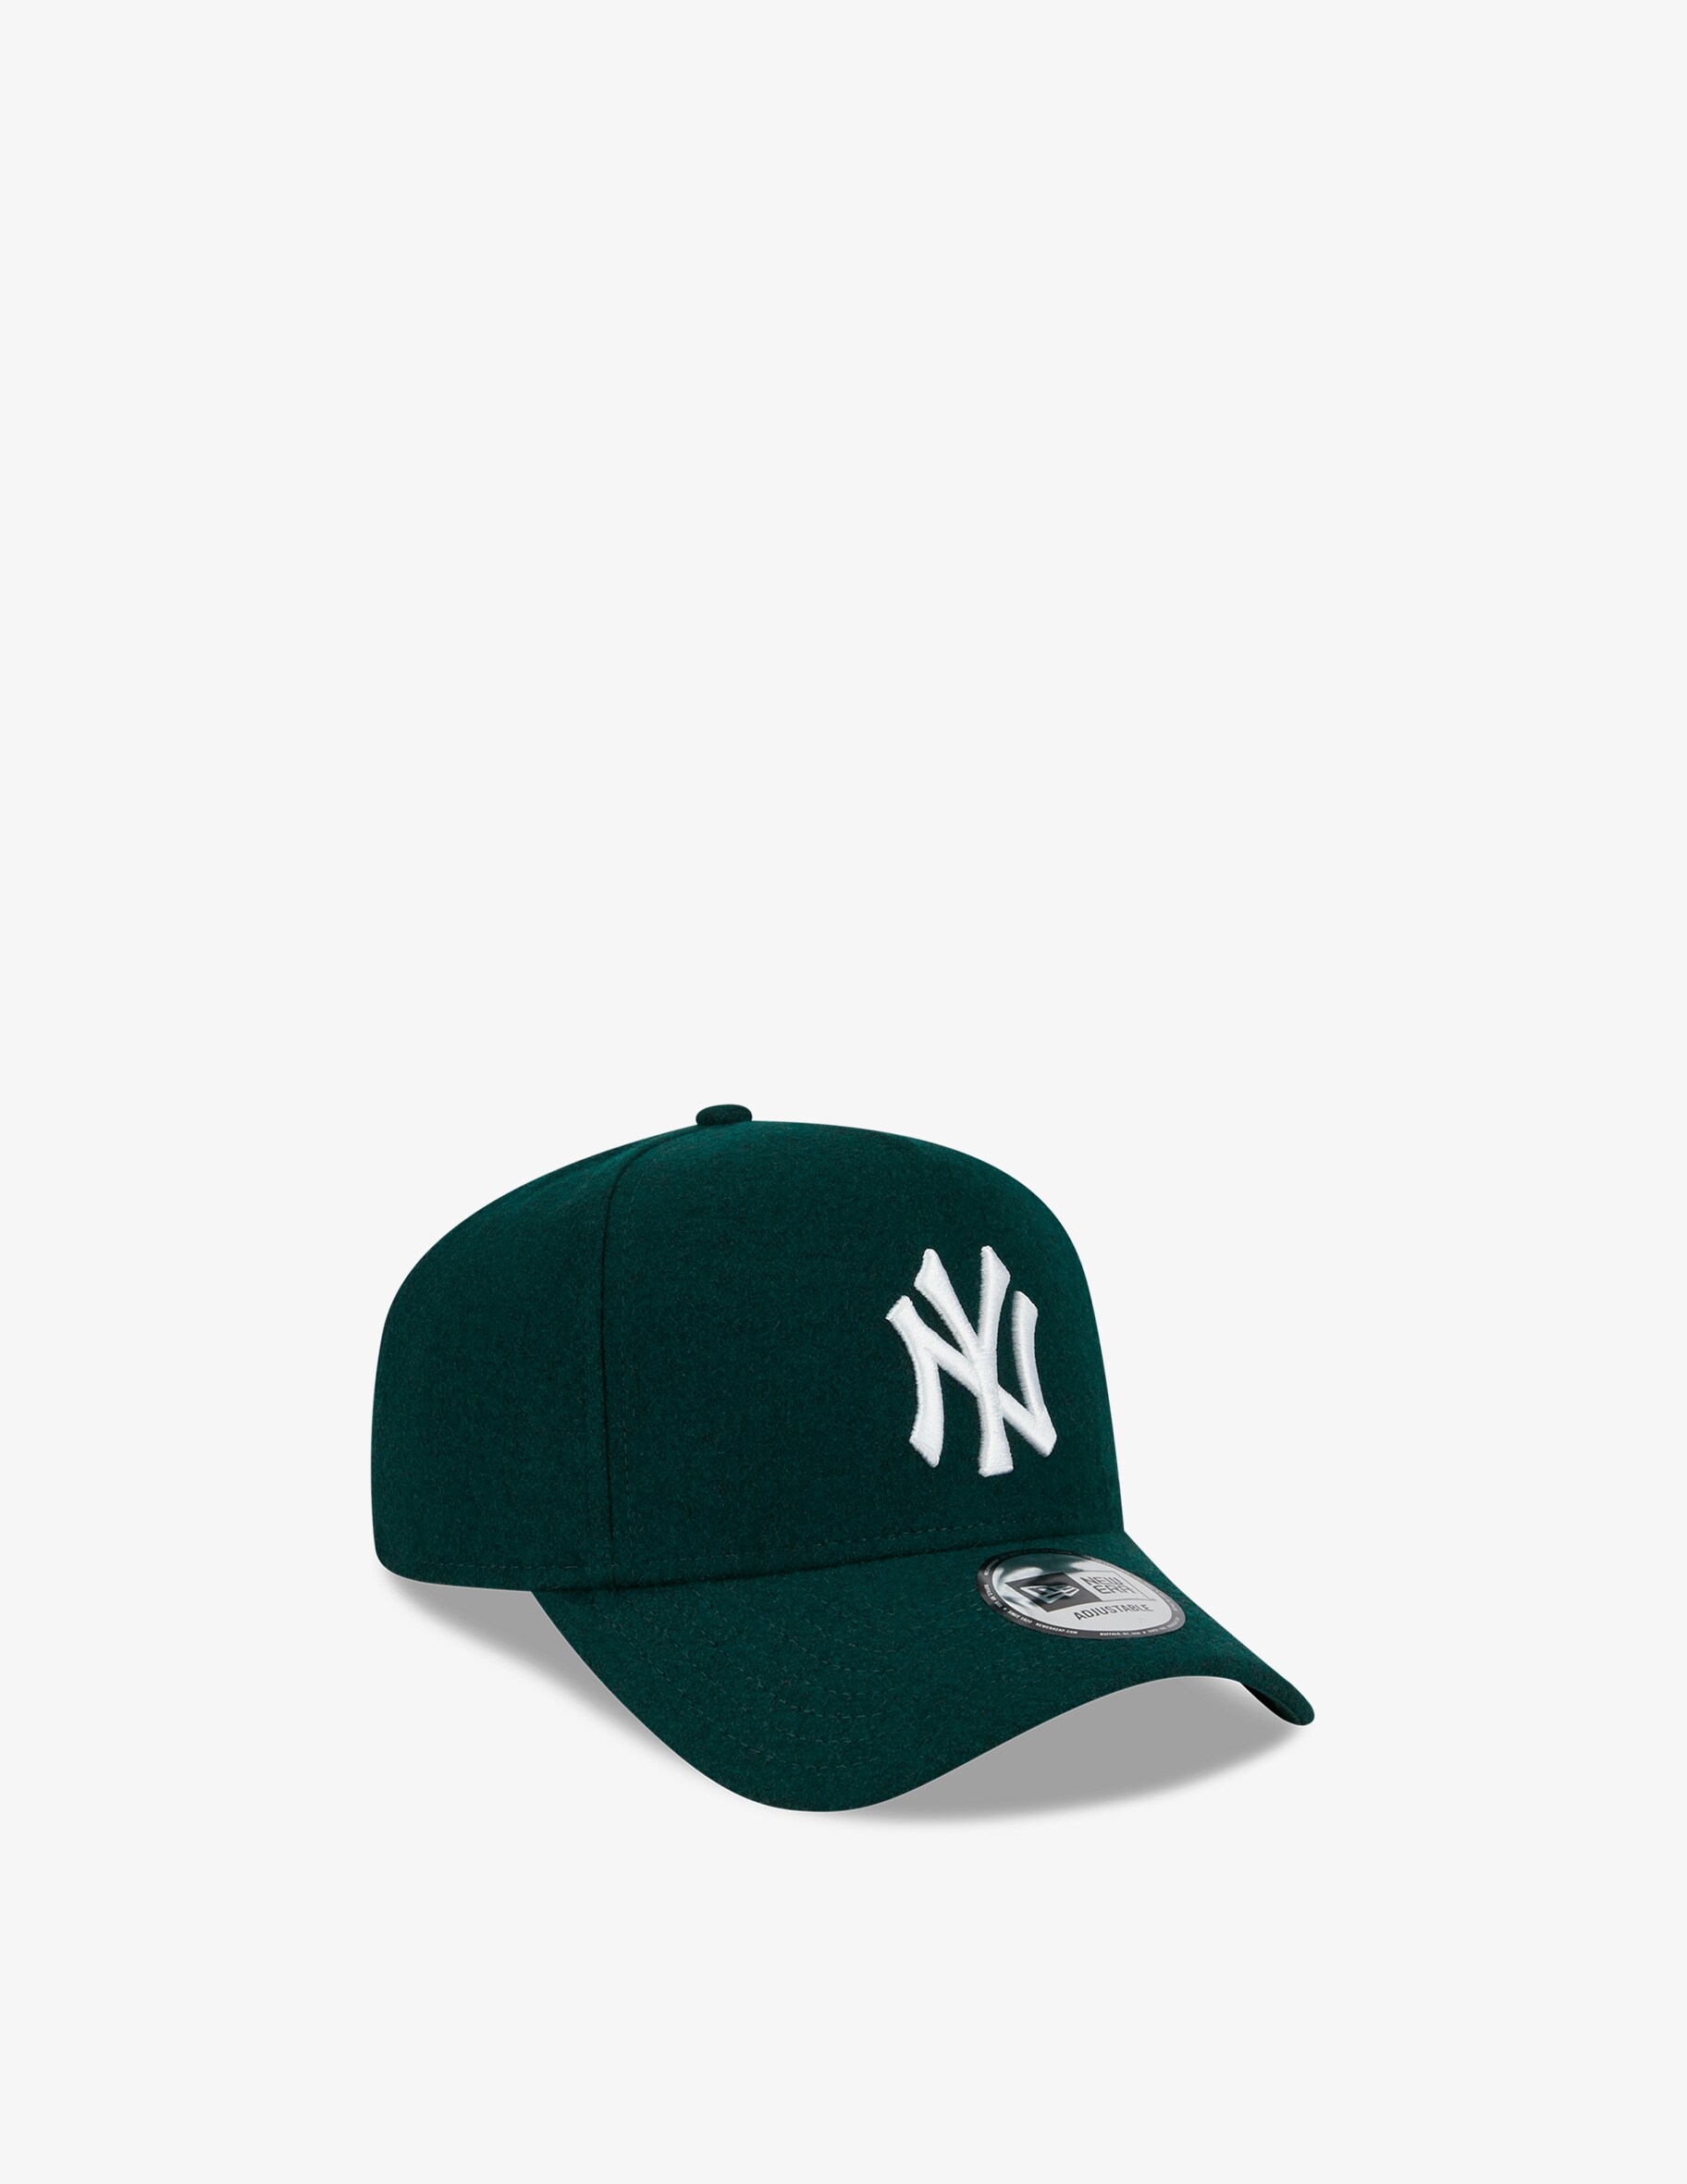 Кепка Melton eframe Нью-Йорк Янкиз New Era, зеленый